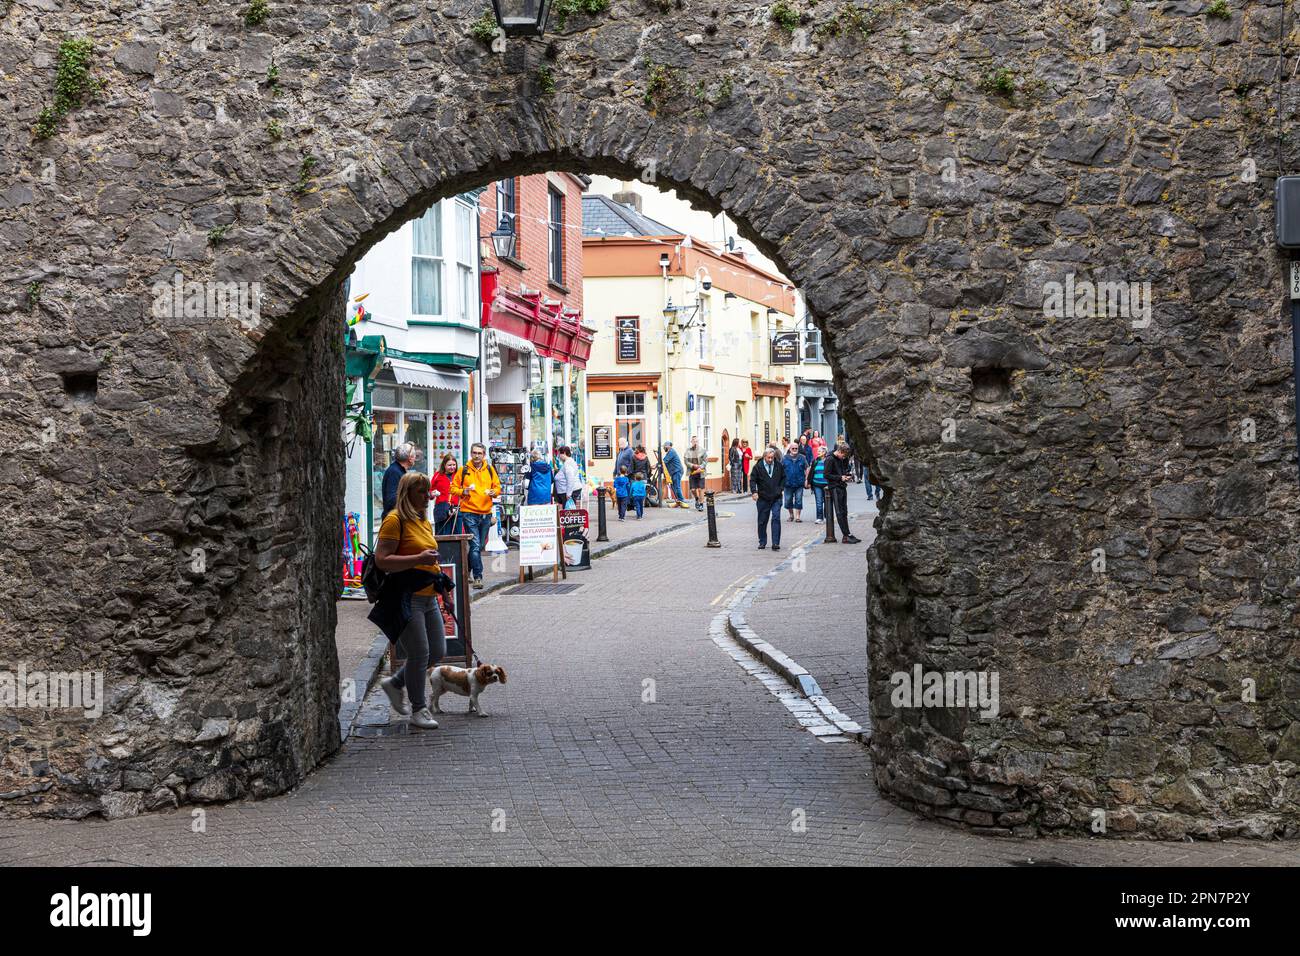 Les murs de la ville de Tenby sont des structures défensives médiévales classées de catégorie I autour de la ville de Tenby dans Pembrokeshire. Ville fortifiée, murs de ville, Banque D'Images